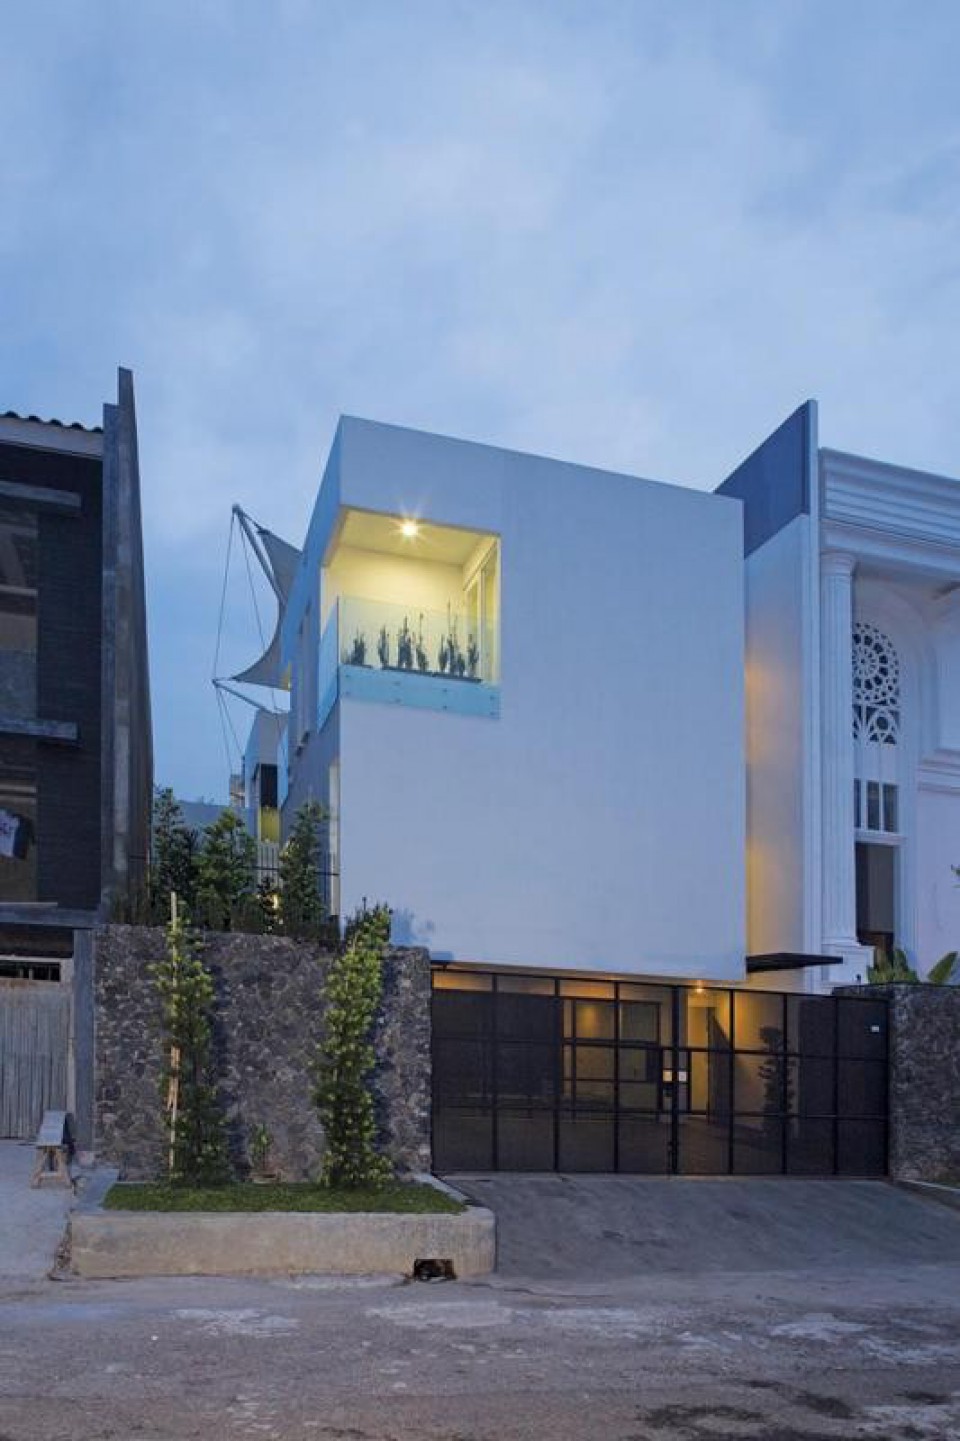 White Box House Rumah Minimalis Di Taman Kebon Jeruk Jakarta